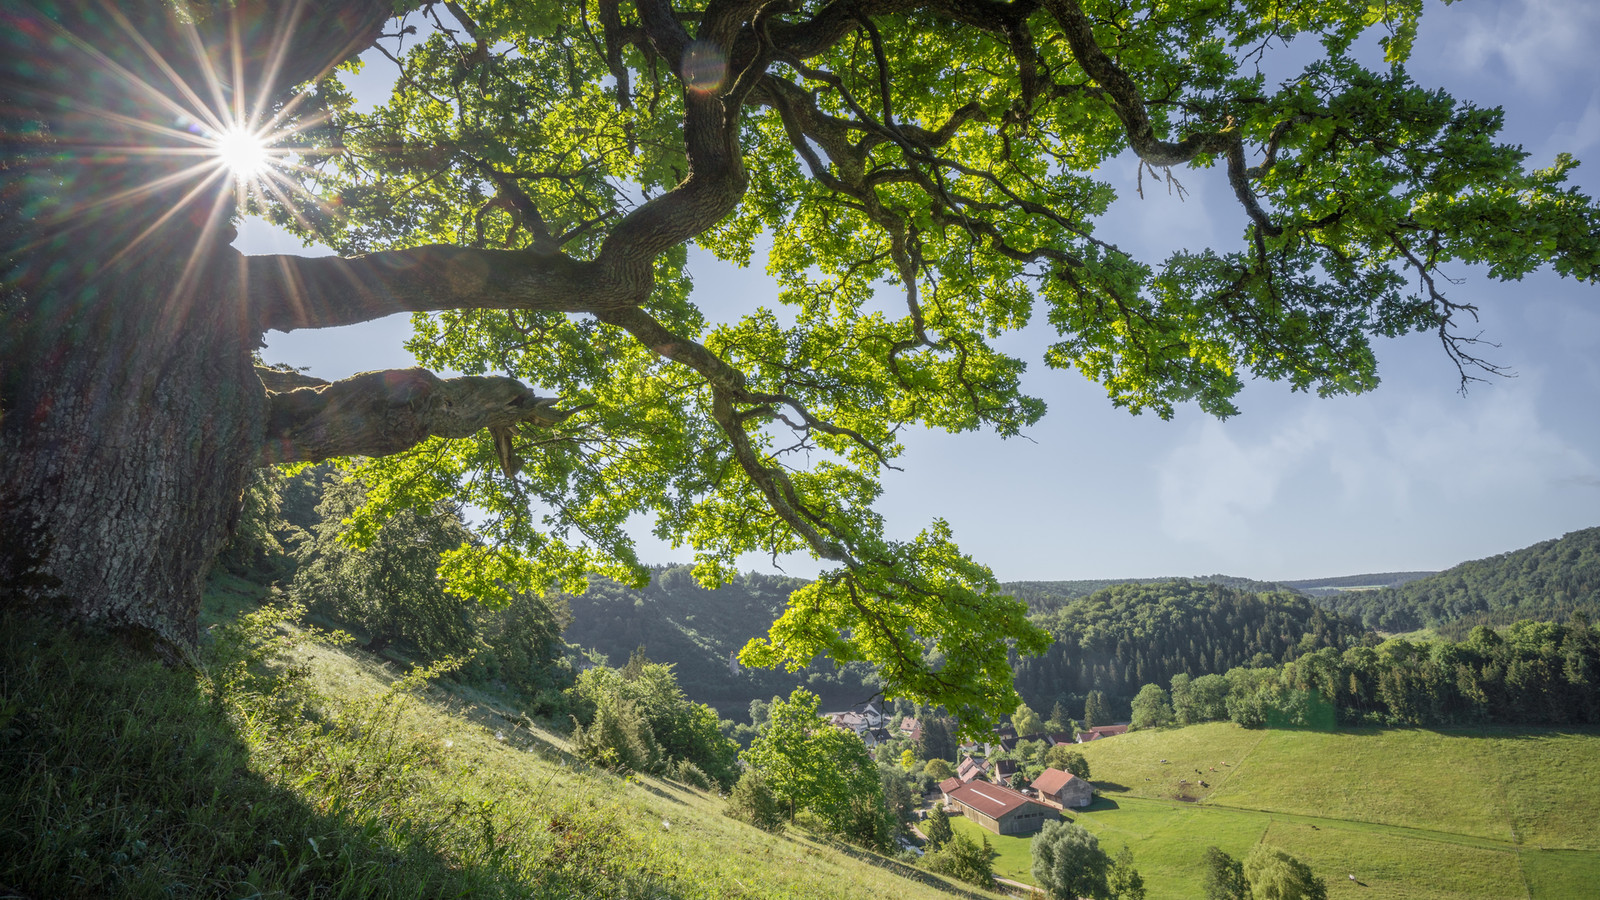 Dorfleben im Großen Lautertal in Münsingen im Biosphärengebiet Schwäbische Alb. Durch einen großen Baum wirft die Sonne Strahlen. Der Baum steht an einem Hang. Unten fließt ein Fluss und dort befinden sich einige Häuser.